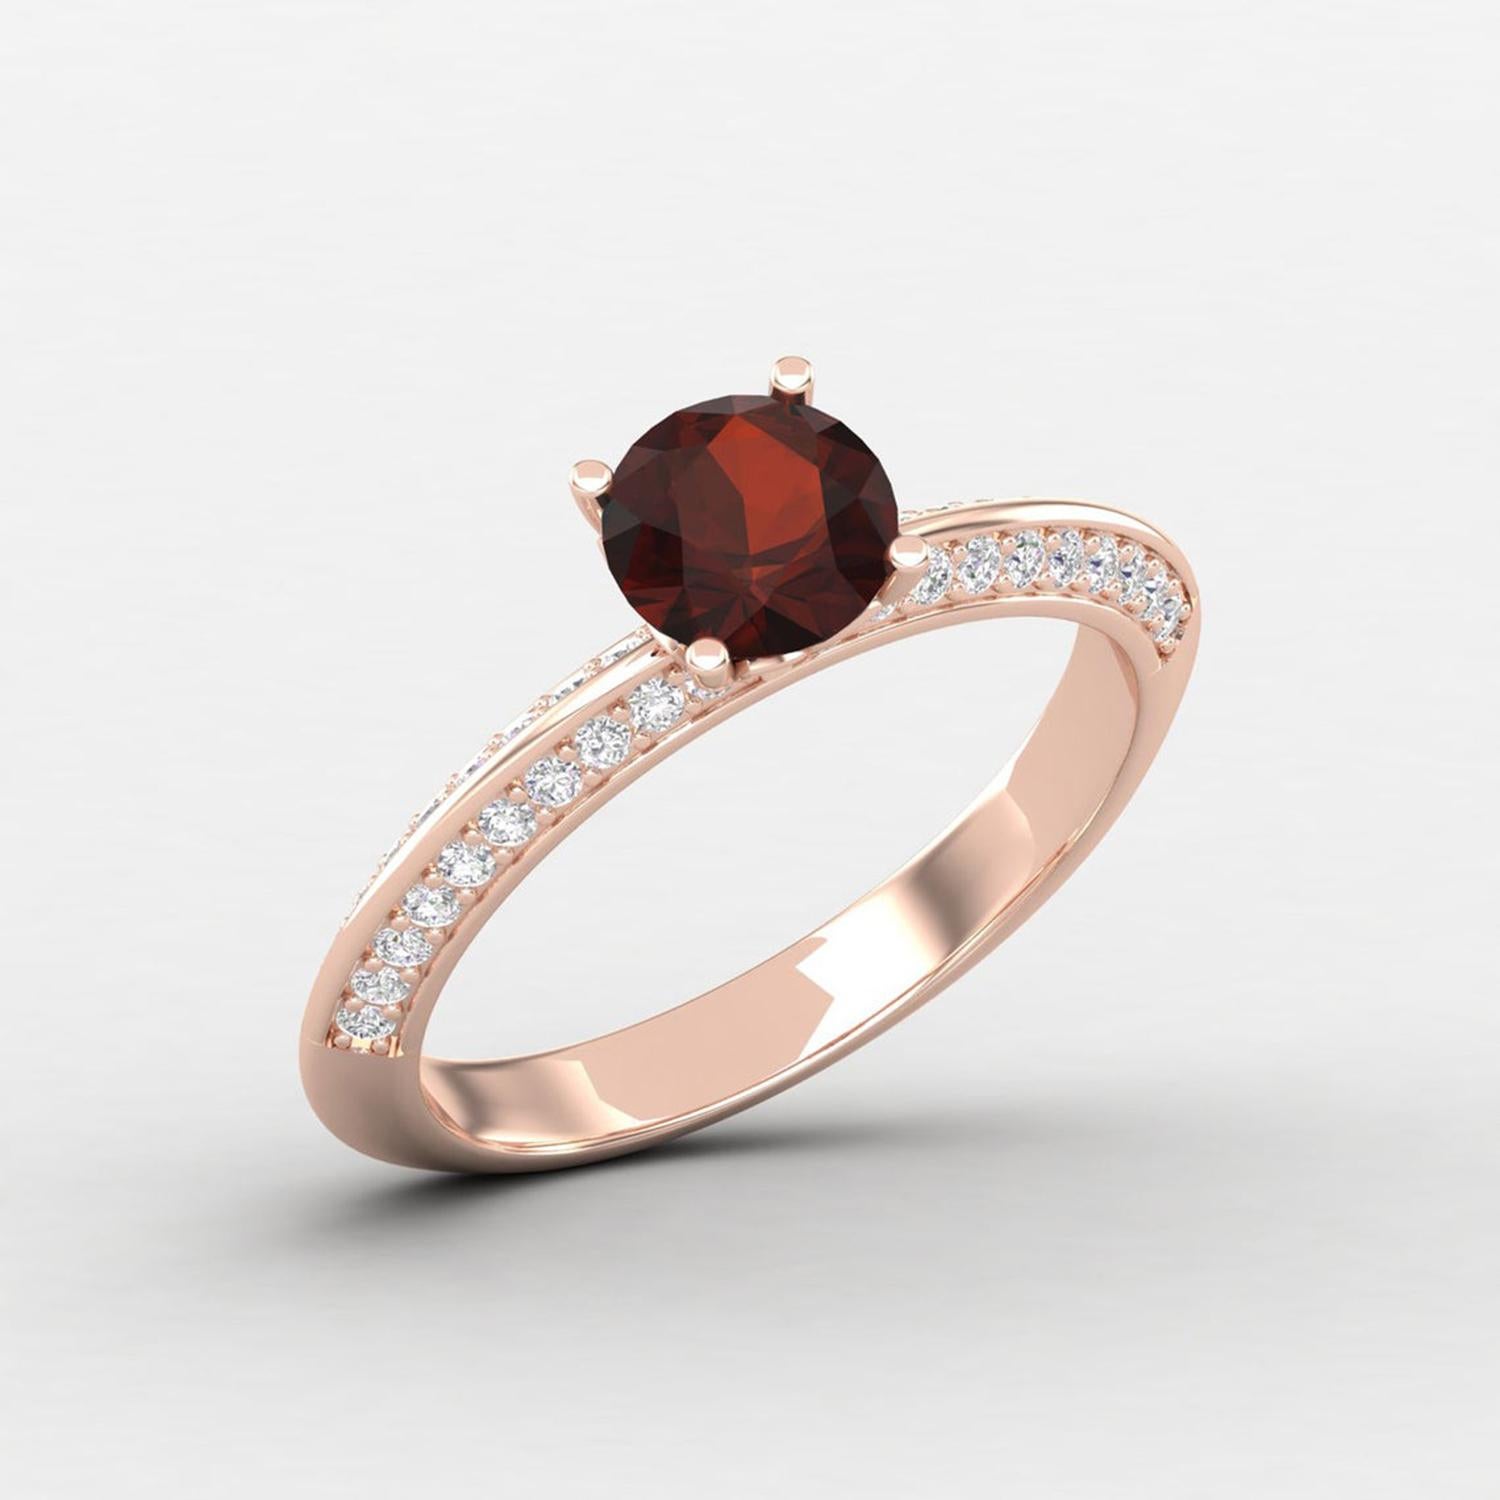 Modern 14 K Gold Orange Garnet Ring / Diamond Solitaire Ring / Engagement Ring for Her For Sale